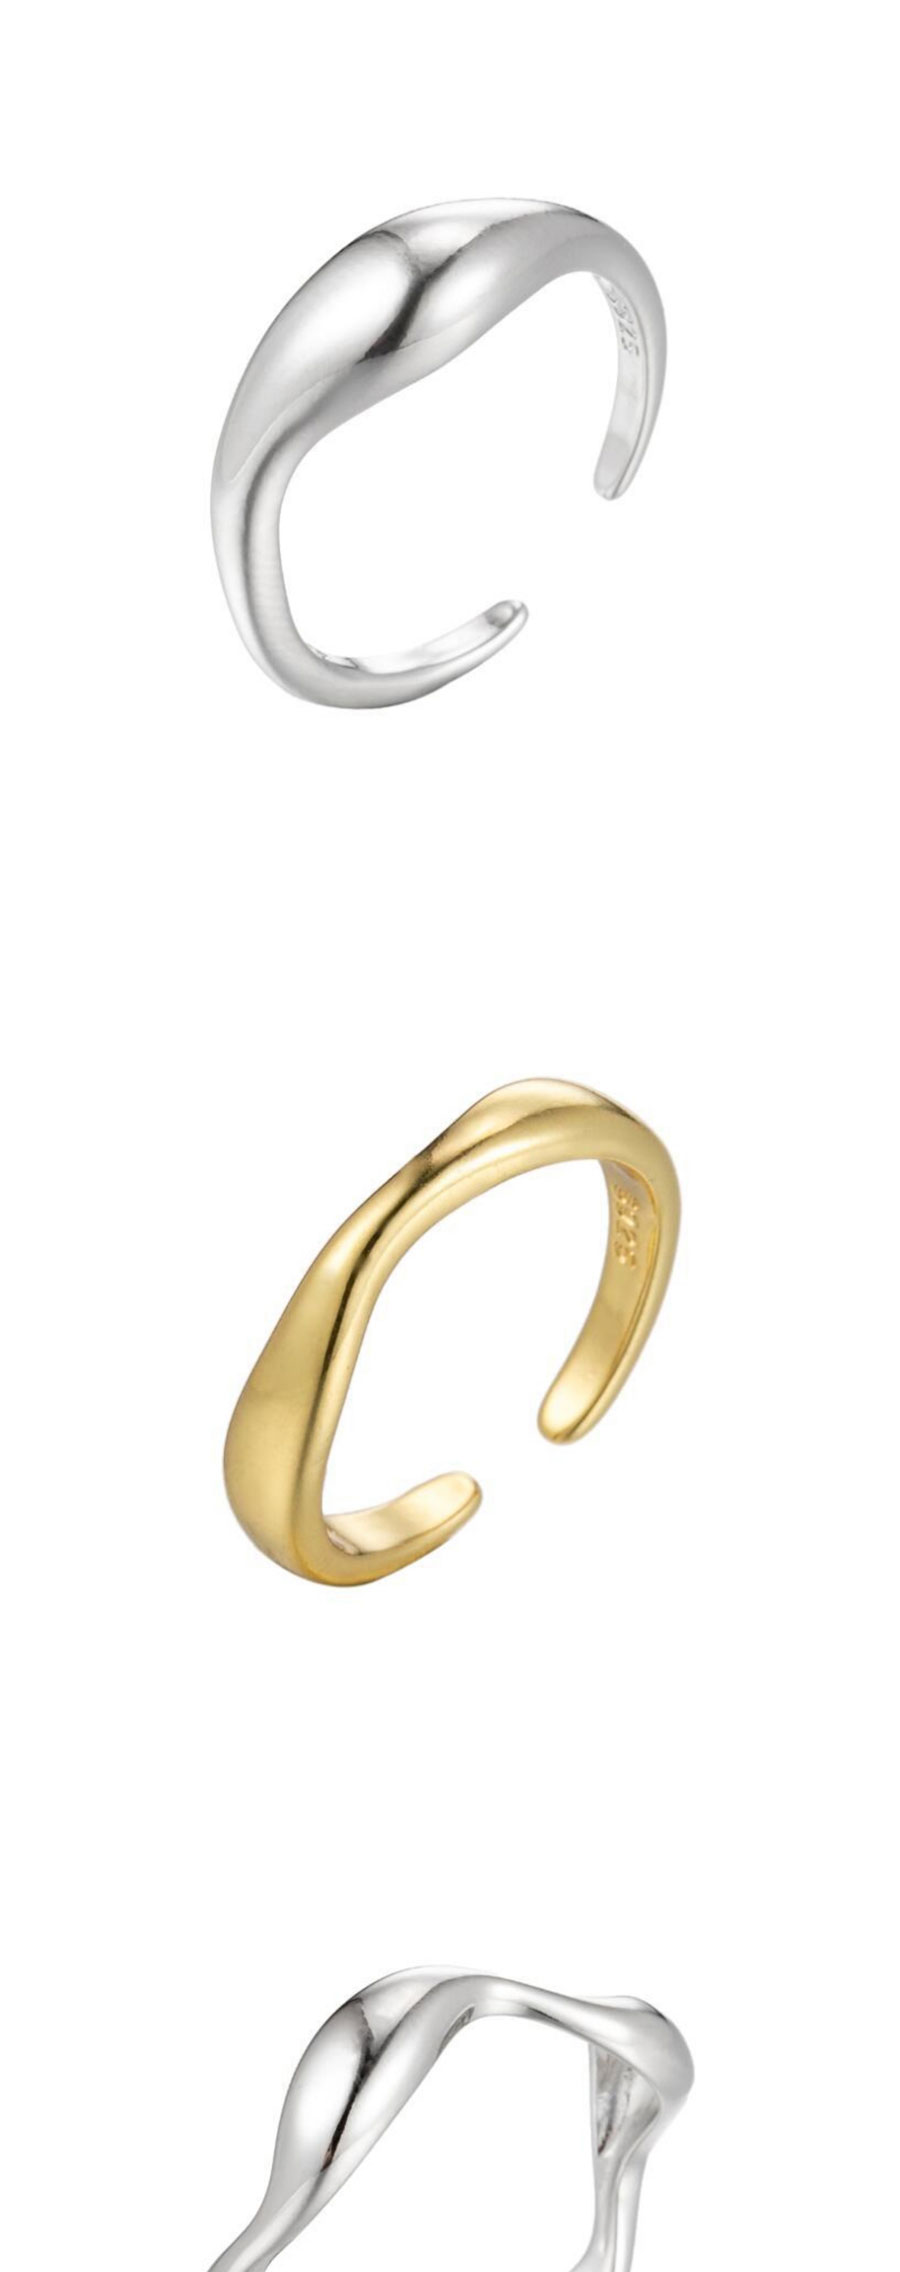 Fashion Golden-7 Stainless Steel Irregular Drop Opening Ring,Rings